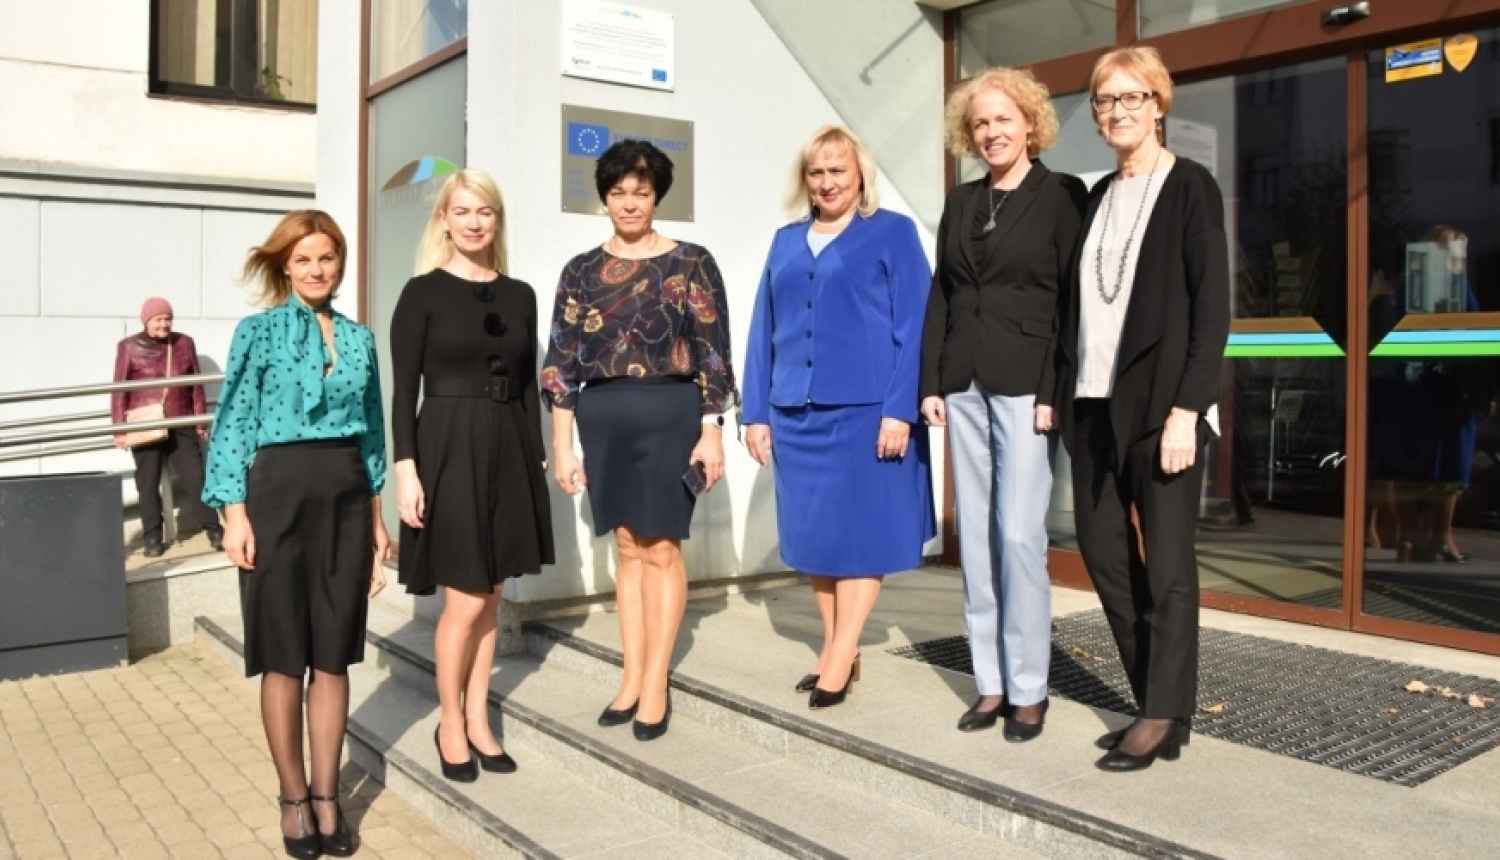 Atklāts Europe Direct centra Jelgavā jaunais darbības periods